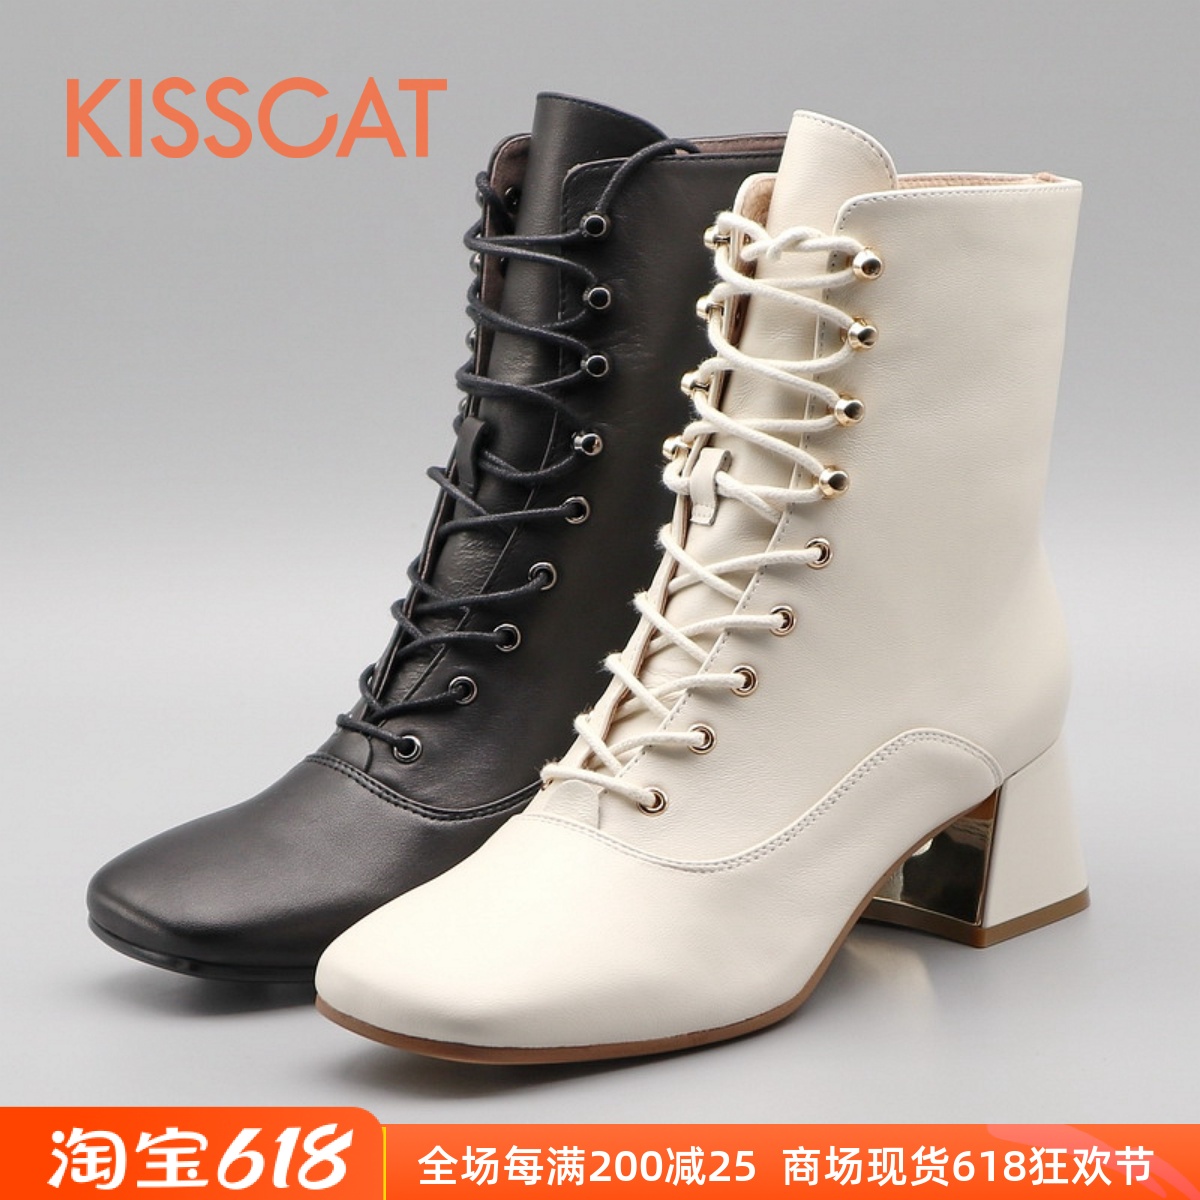 KISSCAT接吻猫2021秋冬正品粗跟系带圆头羊皮女短靴子KA21712-11